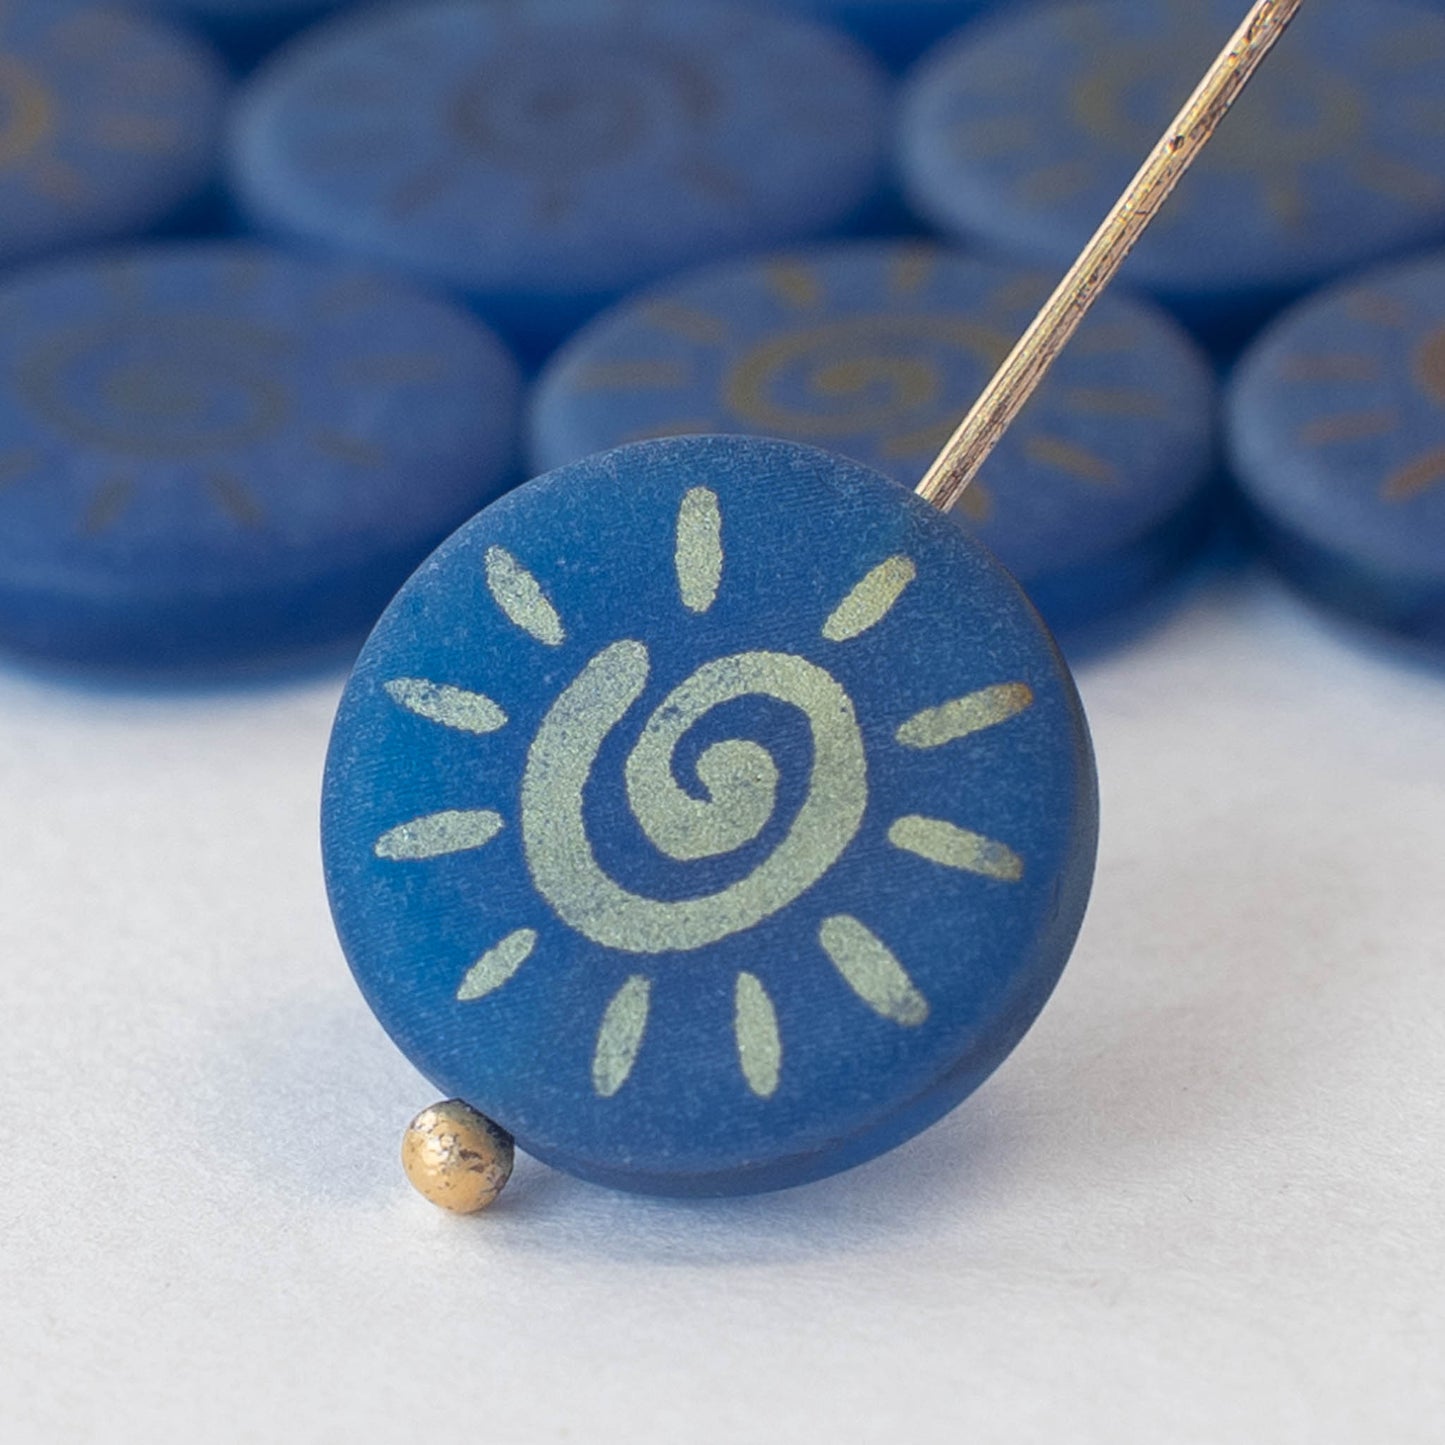 14mm Coin Beads - Blue Matte - 8 beads